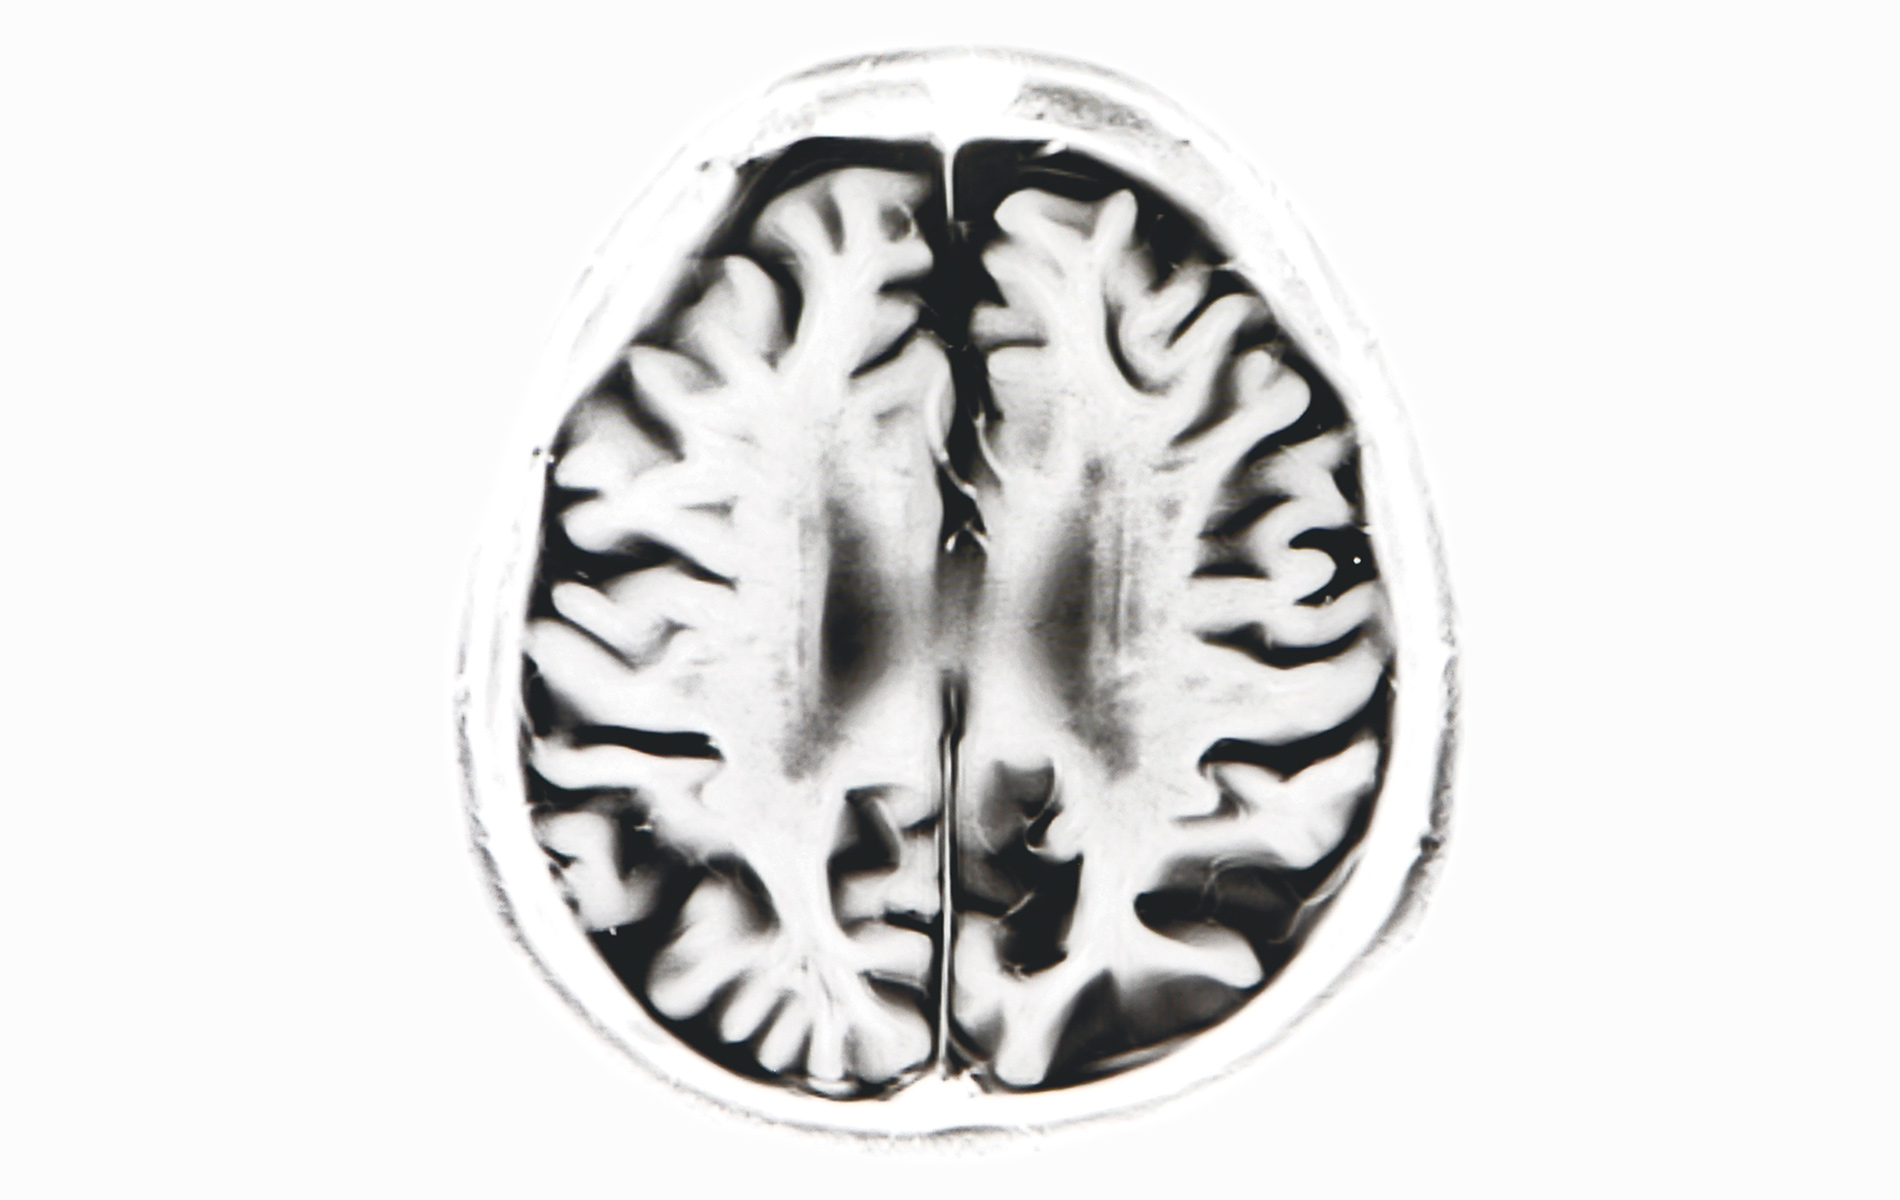 Decaying brain scan, alzheimer's